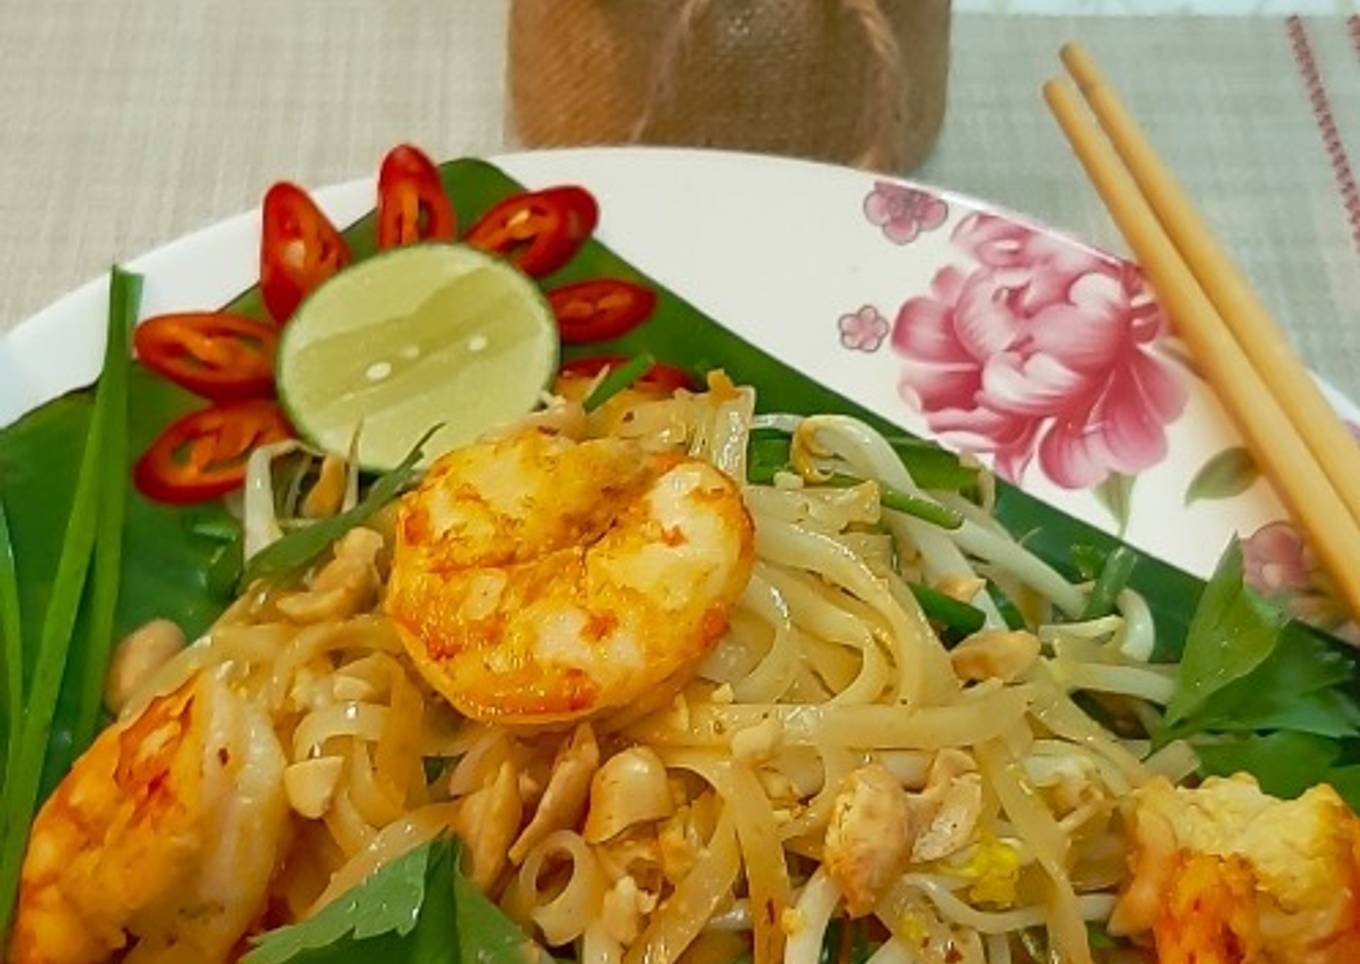 Phad Thai Noodles